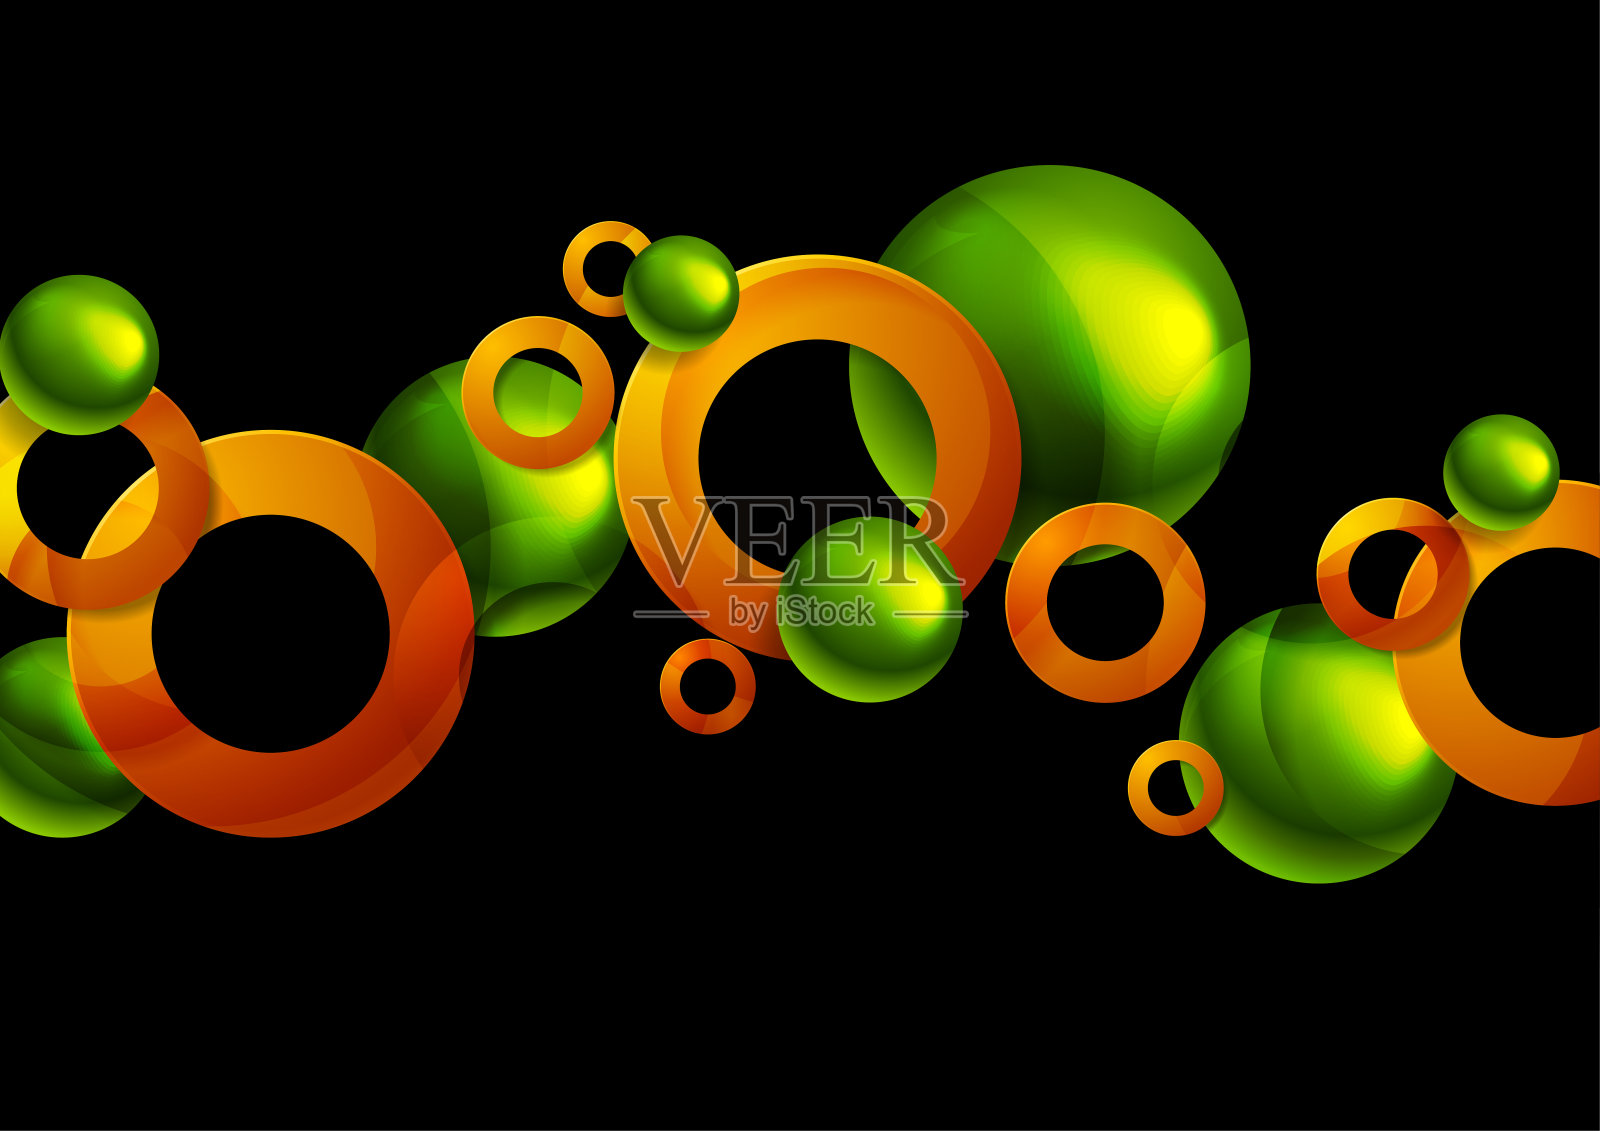 光滑的绿橙抽象圆和球的几何背景插画图片素材